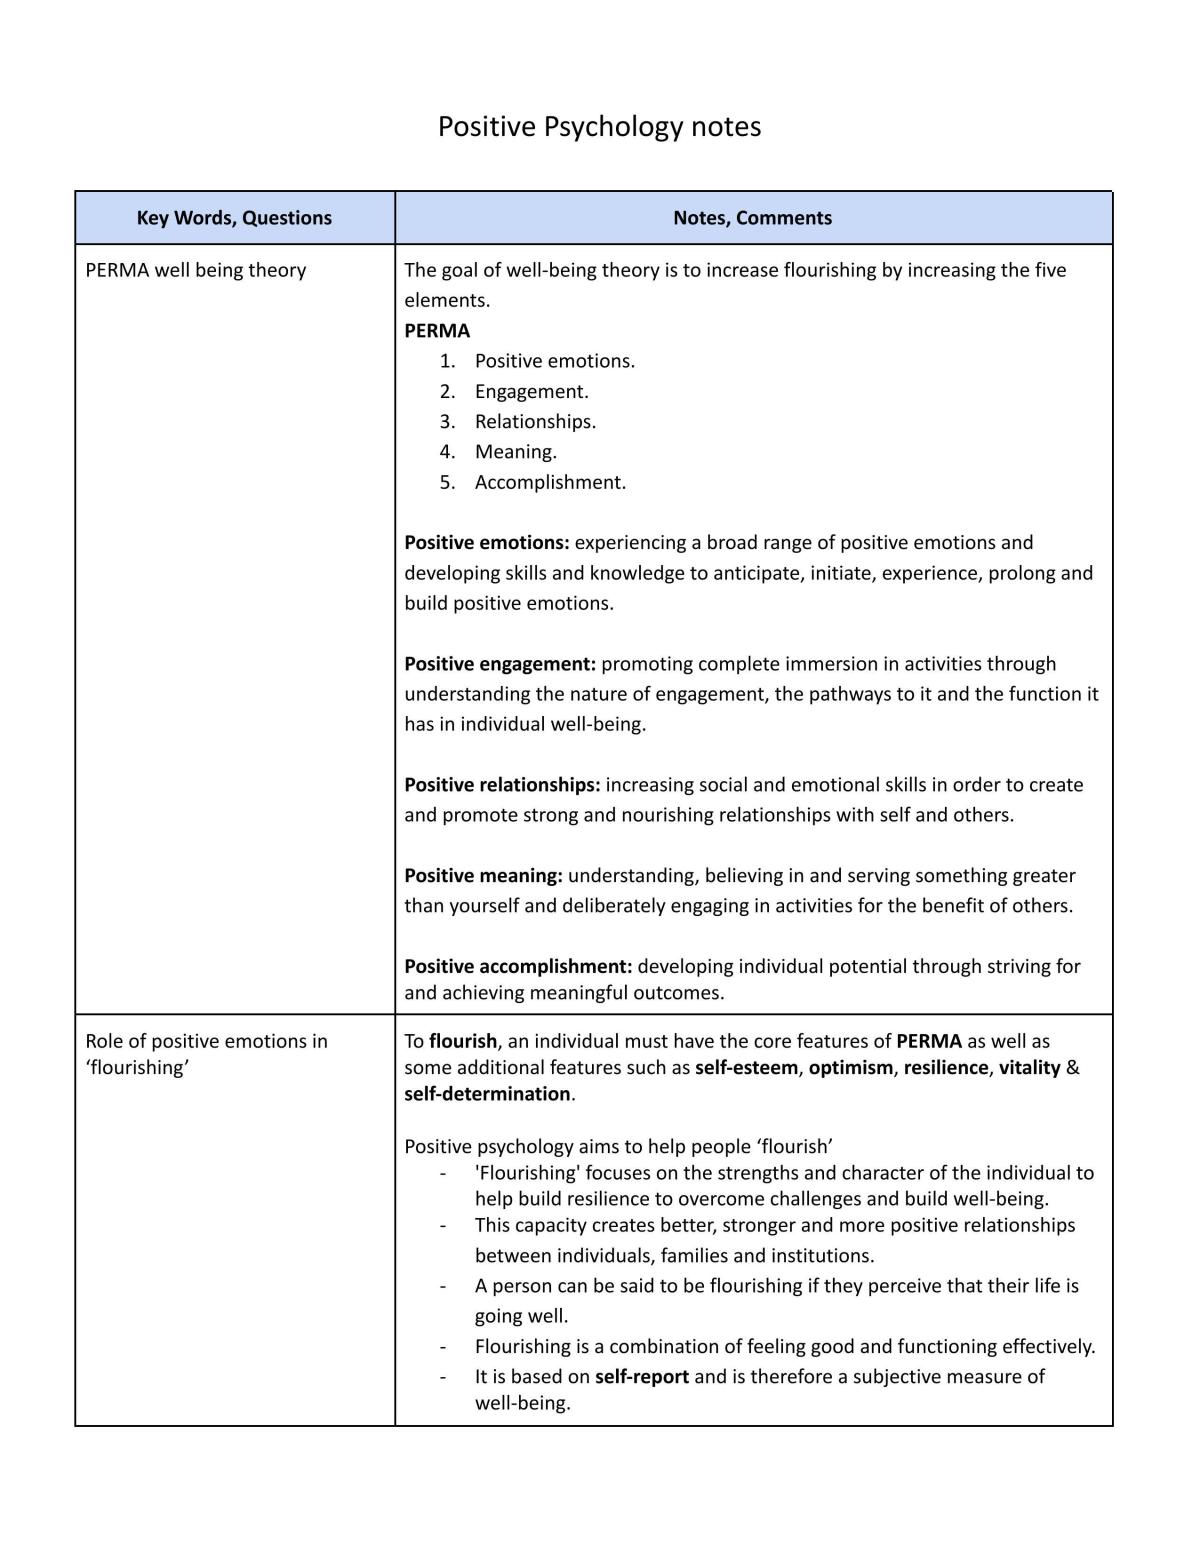 Stage 1 Psychology 2 - Positive Psychology notes - Page 1